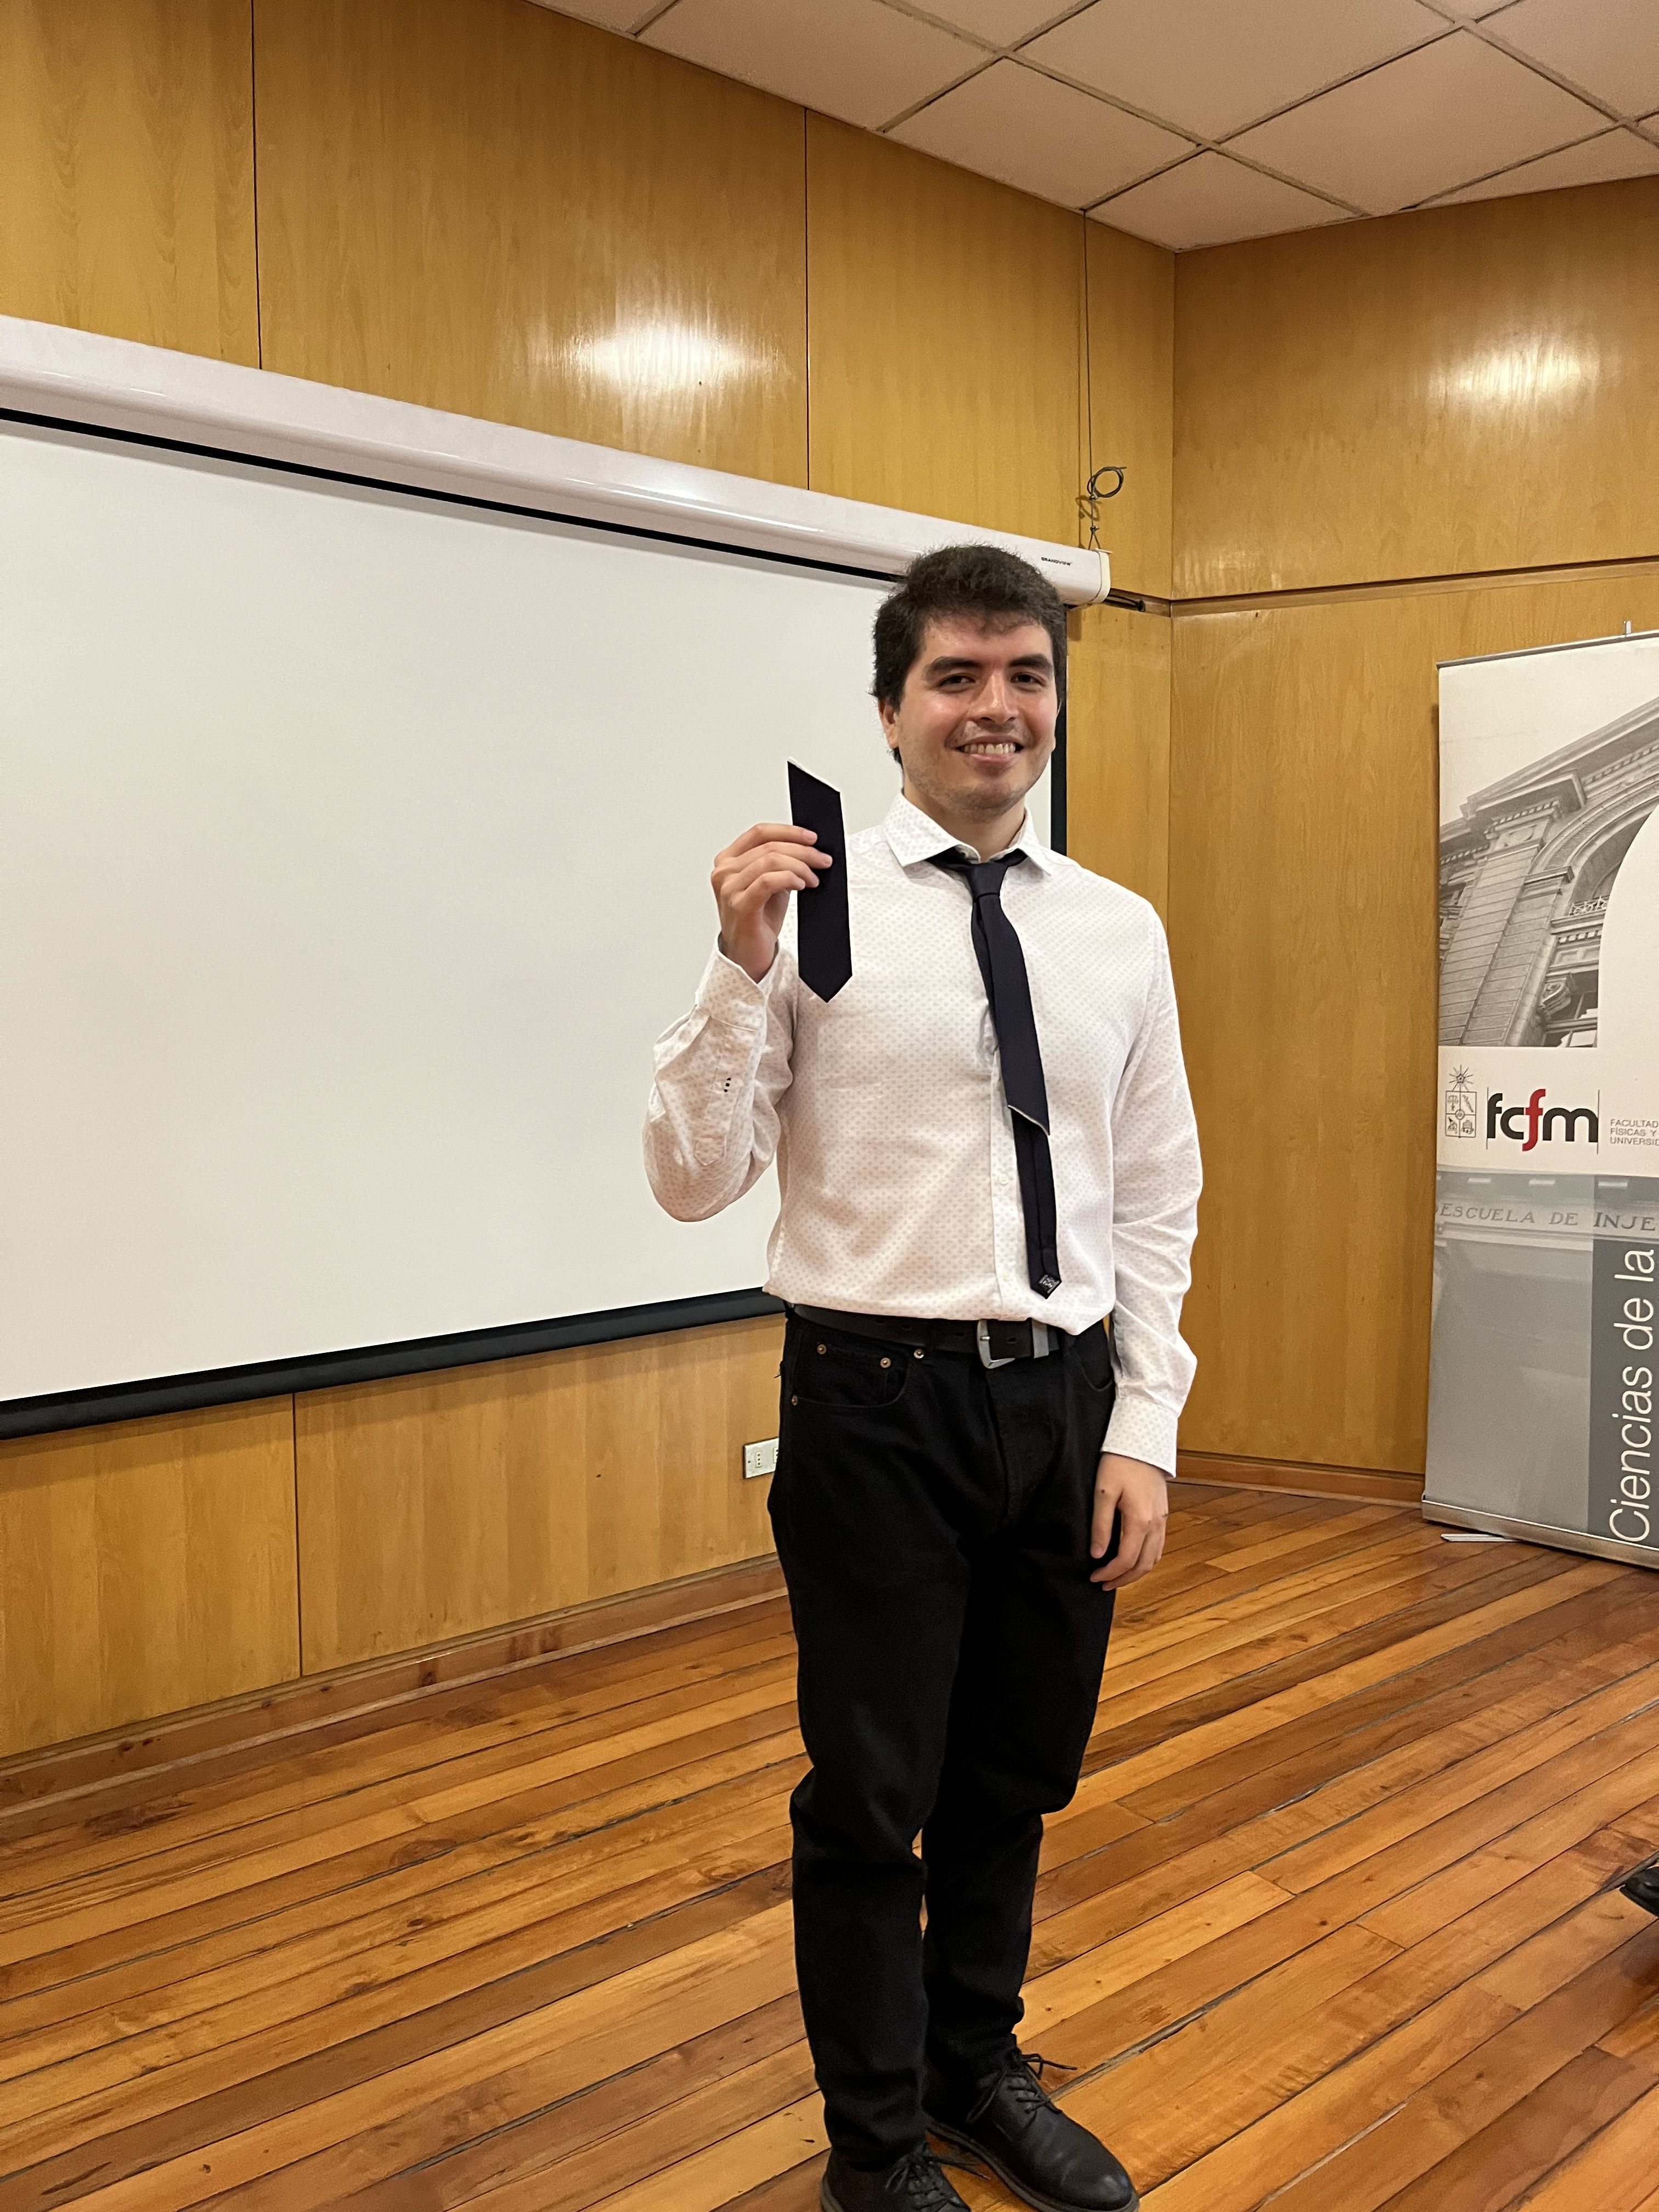 ¡Felicitaciones Matías Seda, nuevo ingeniero civil en computación!